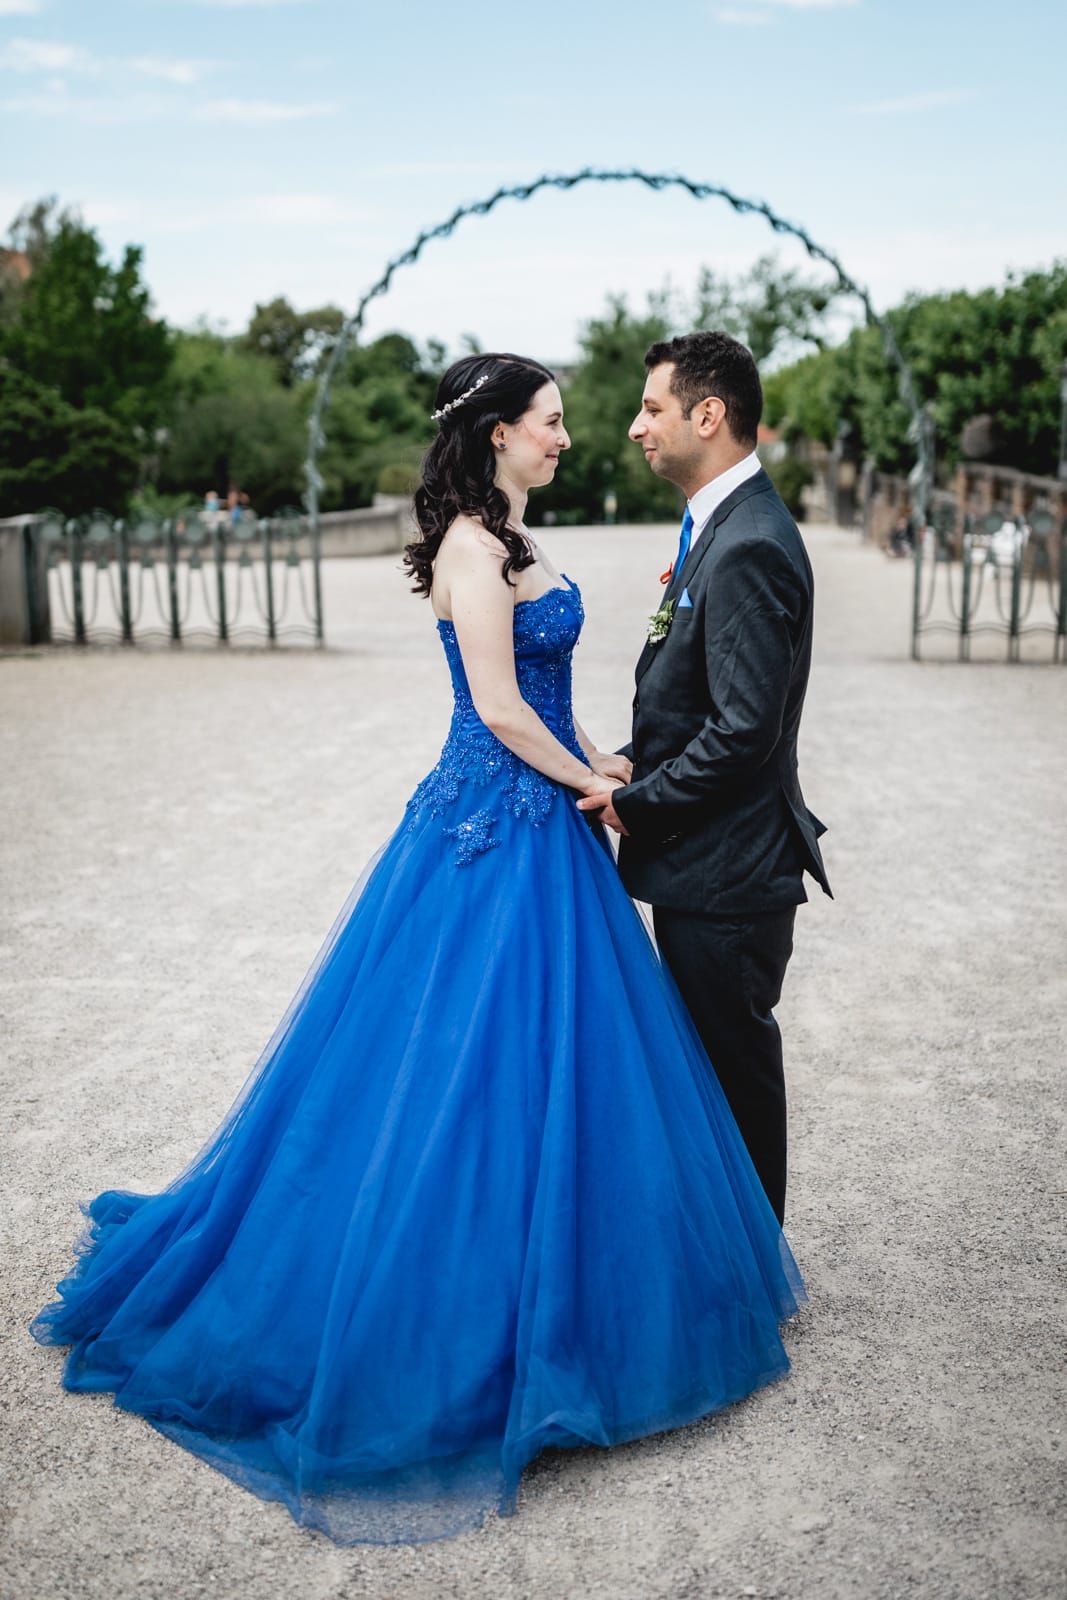 Braut im blauen Brautkleid hält ihren Mann an der Hand und sie lachen sich an